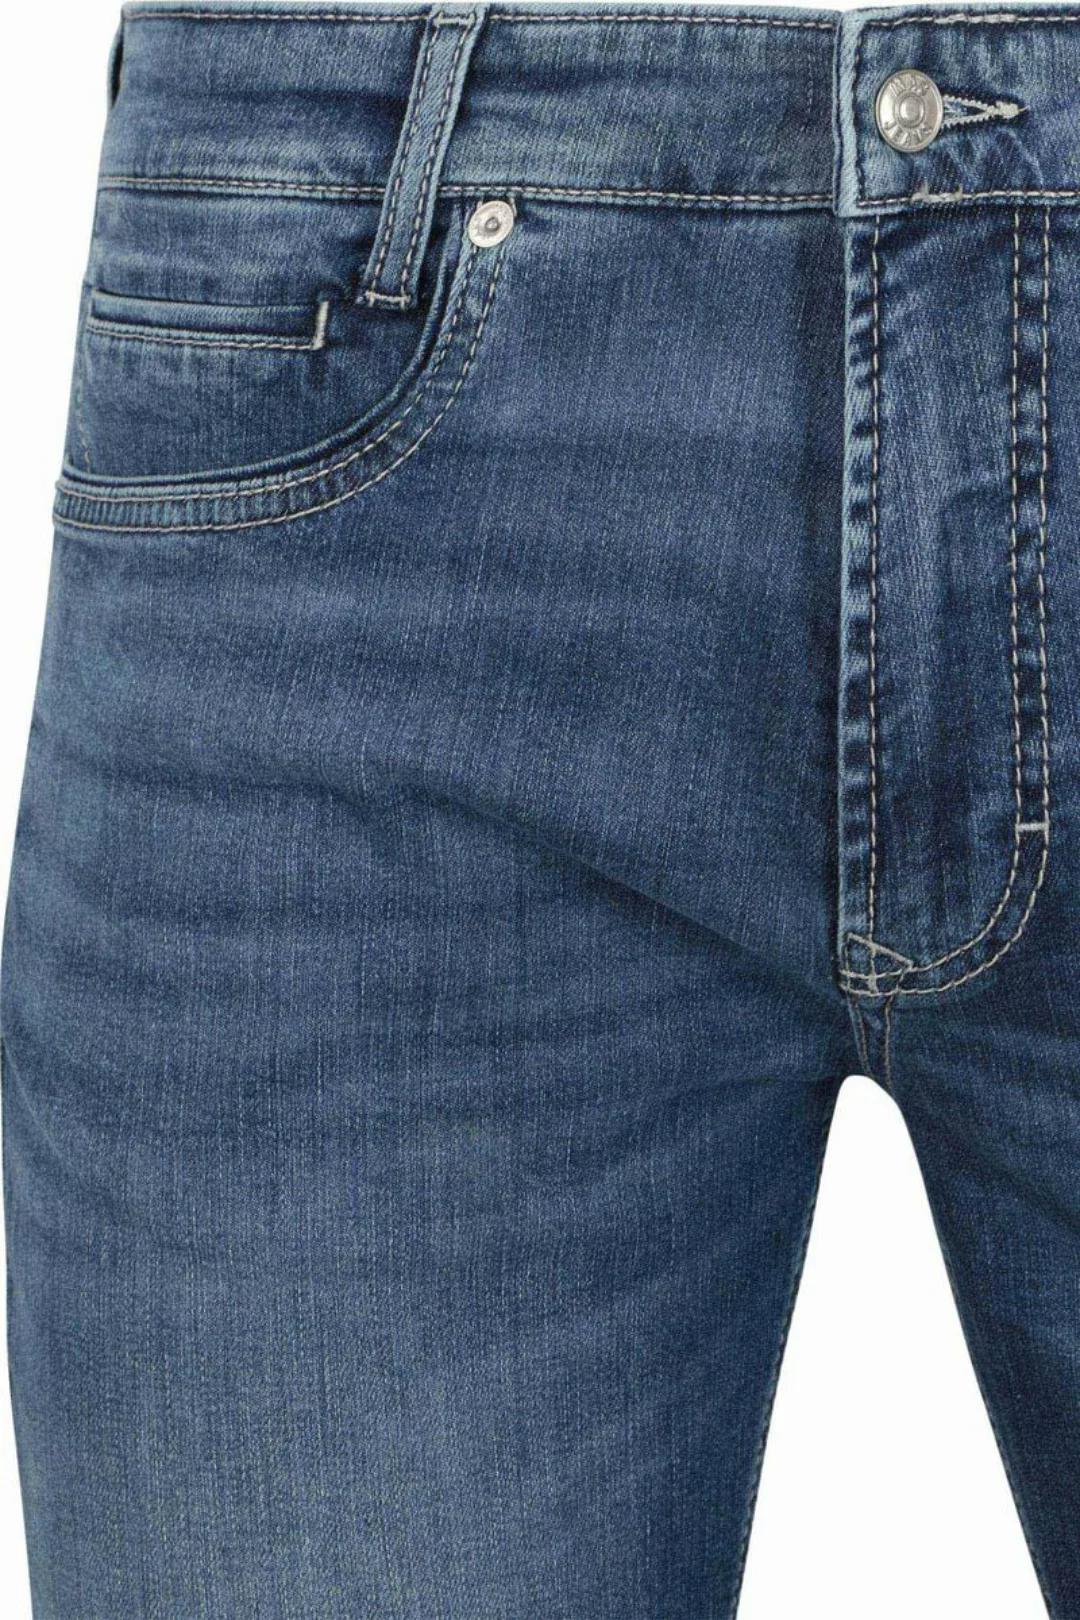 MAC Jeans Arne Pipe Blau - Größe W 34 - L 32 günstig online kaufen